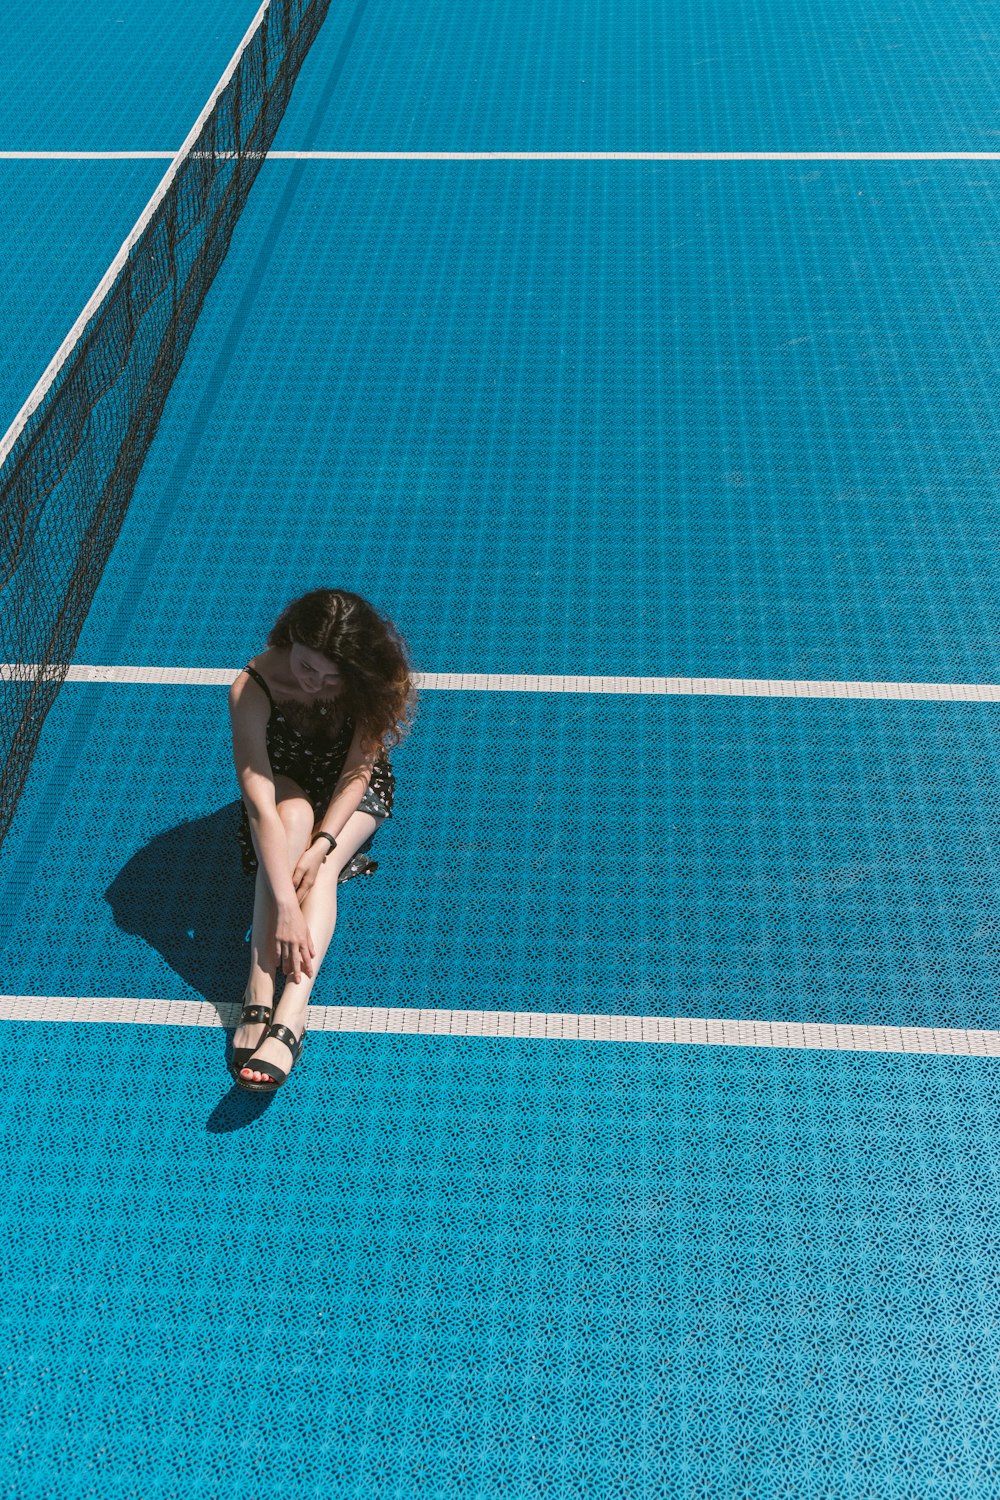 Frau sitzt auf einem Tennisplatz